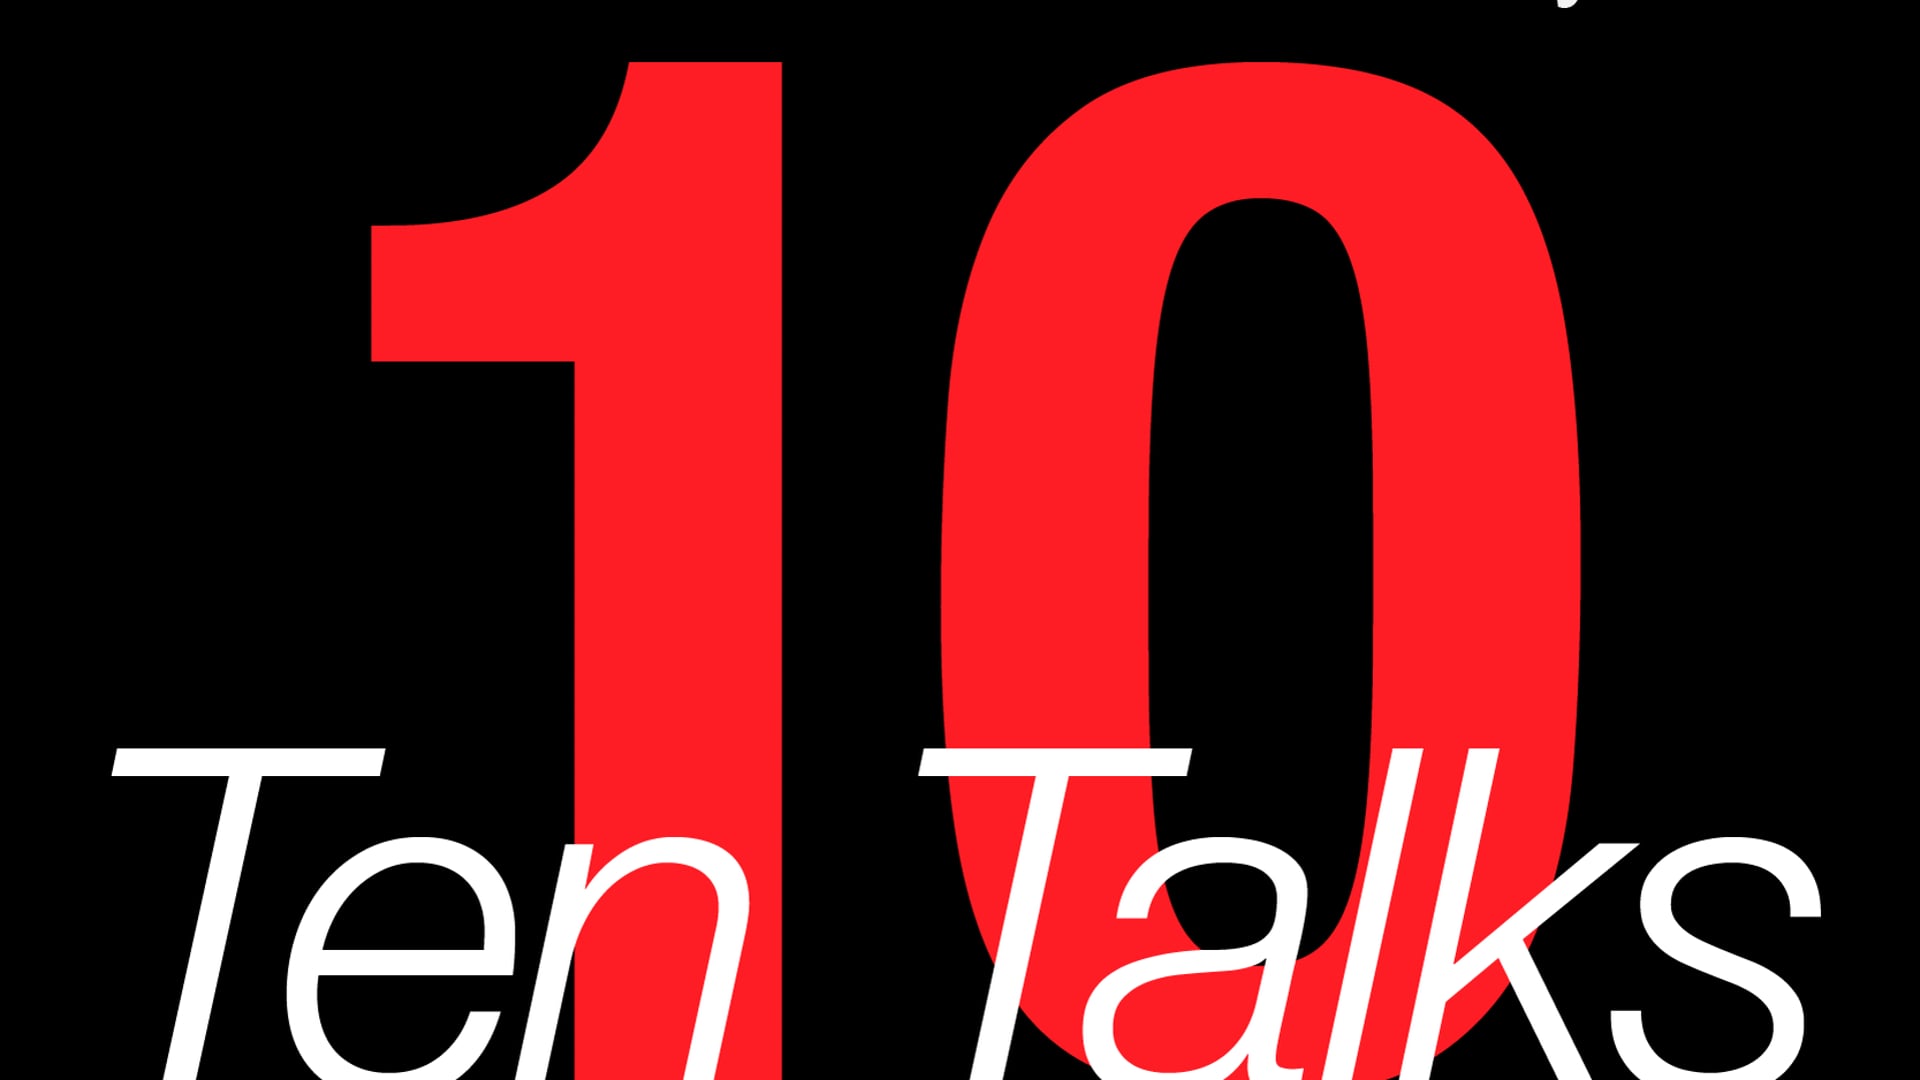 Ten Talks! with Laura E. Jones - Episode 5 - Amanda Tirotta '18